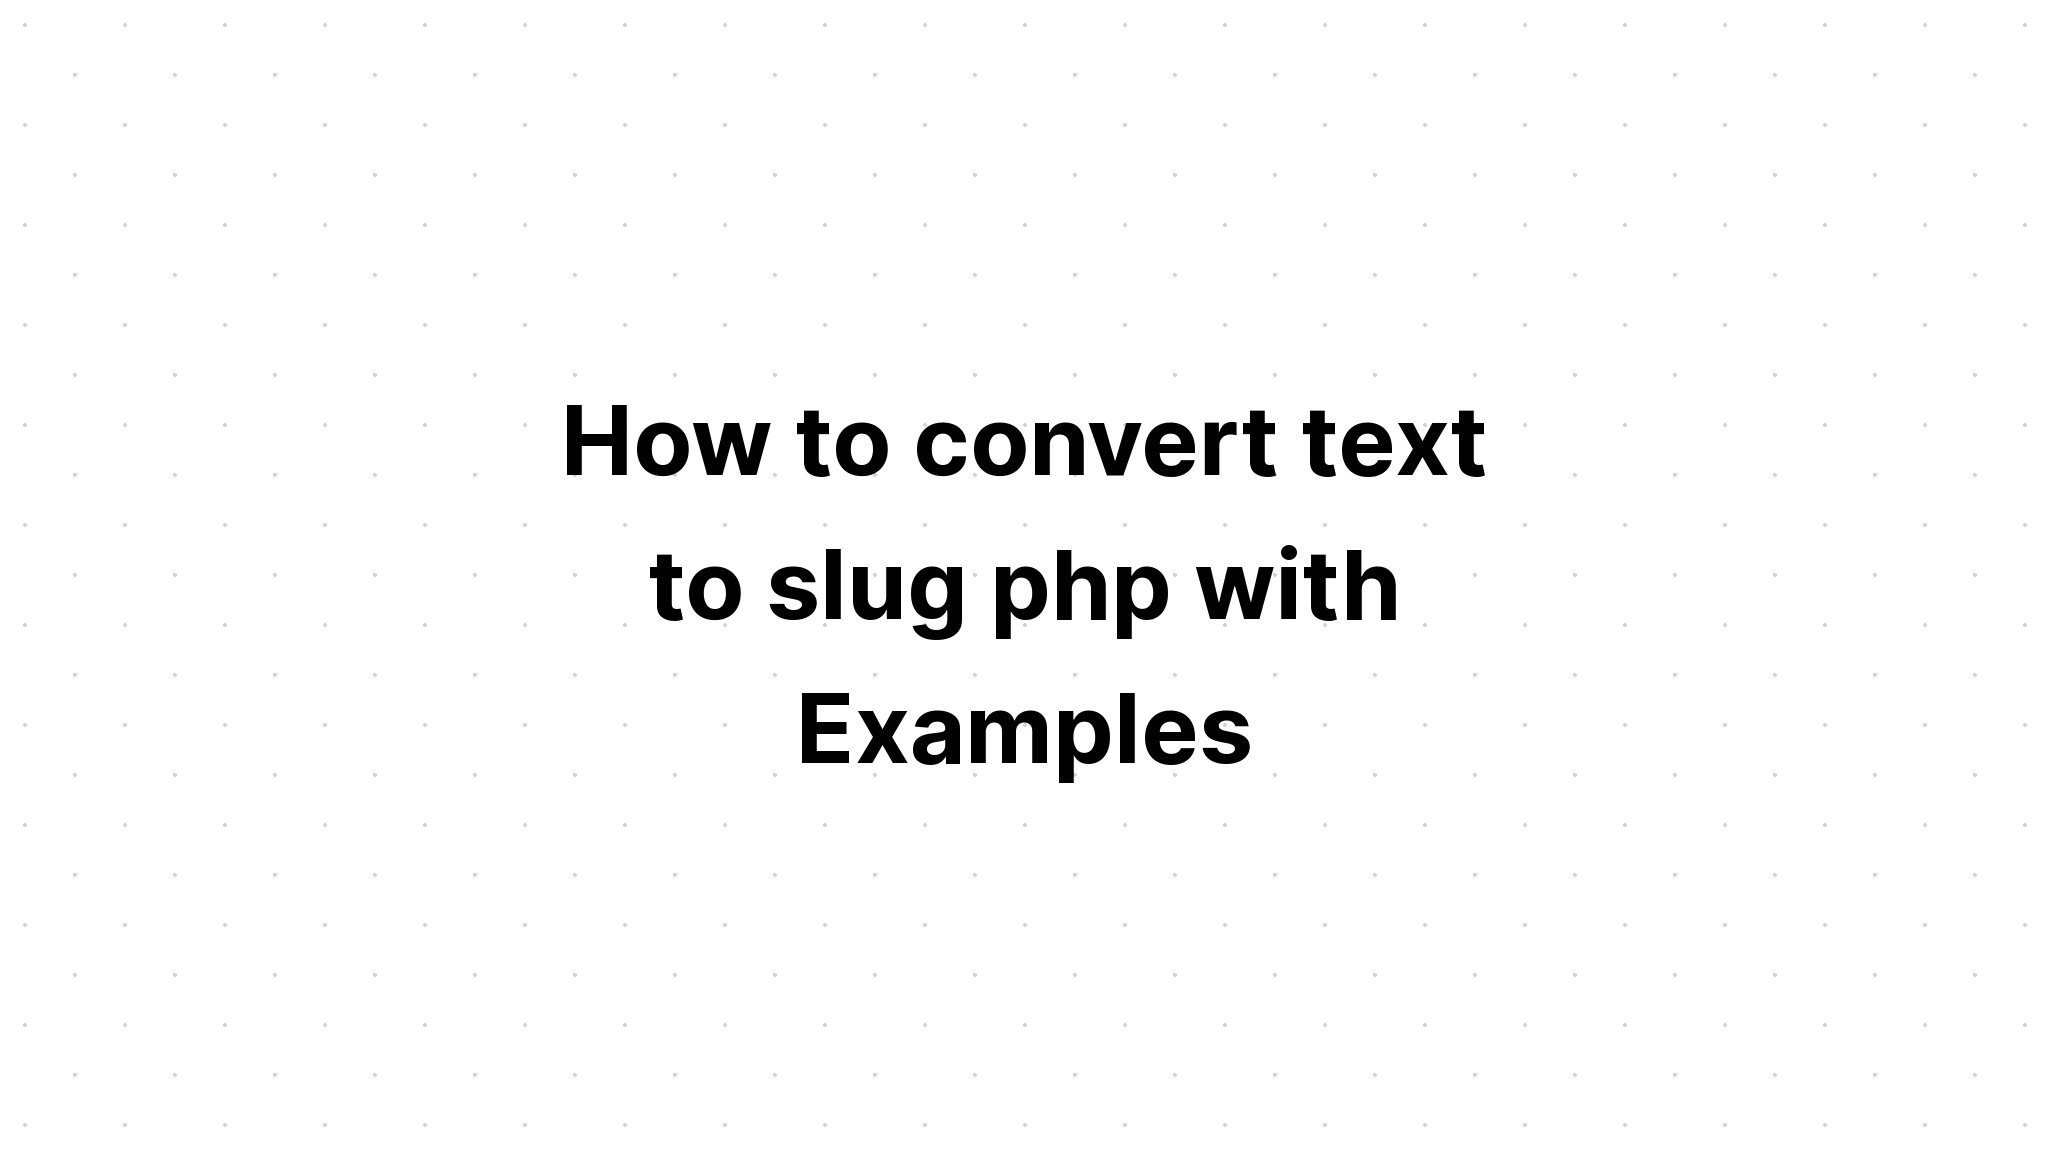 Cách chuyển văn bản sang slug php với các ví dụ